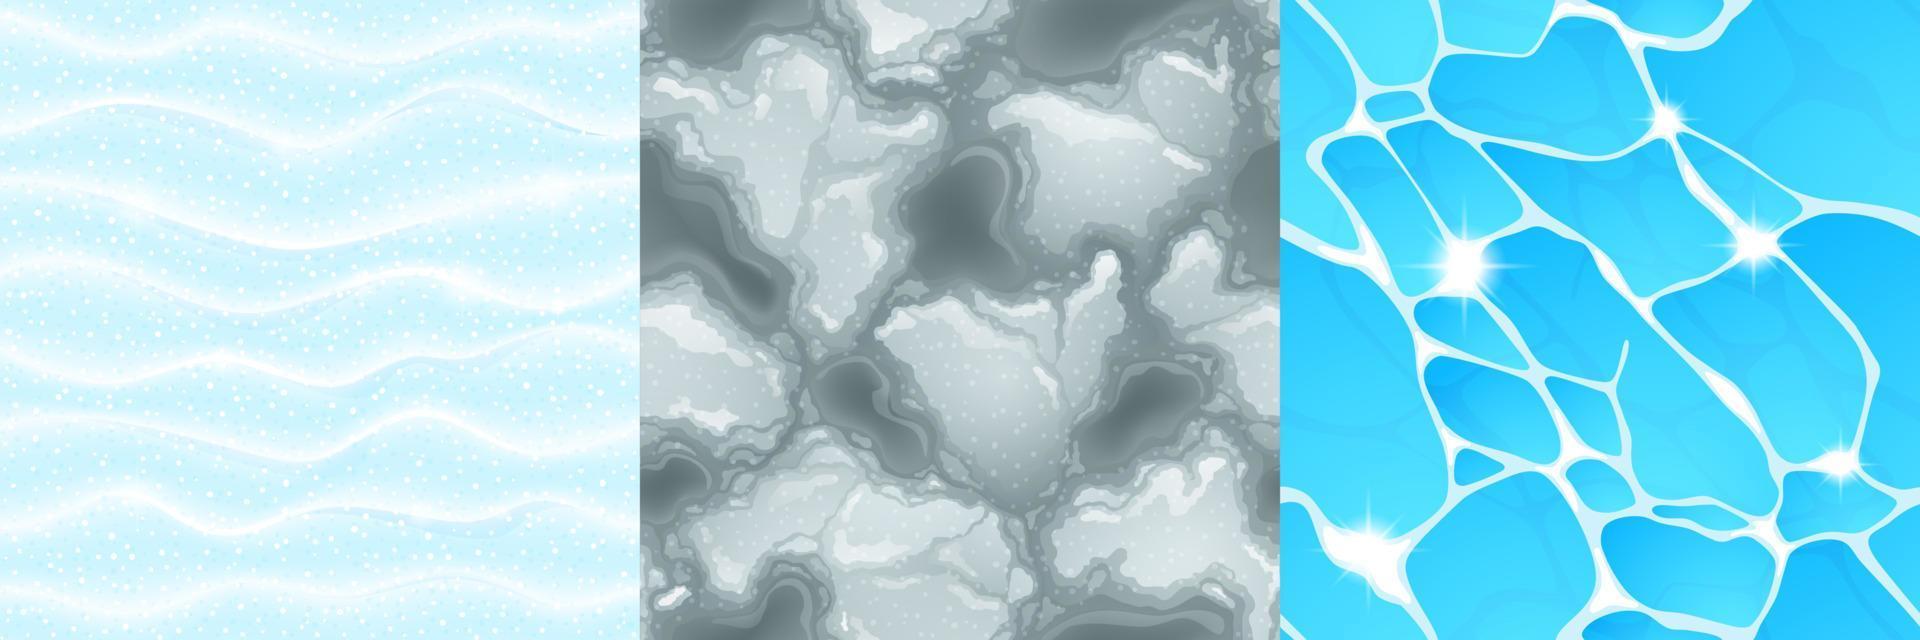 texturer av vatten, snö och slask vektor